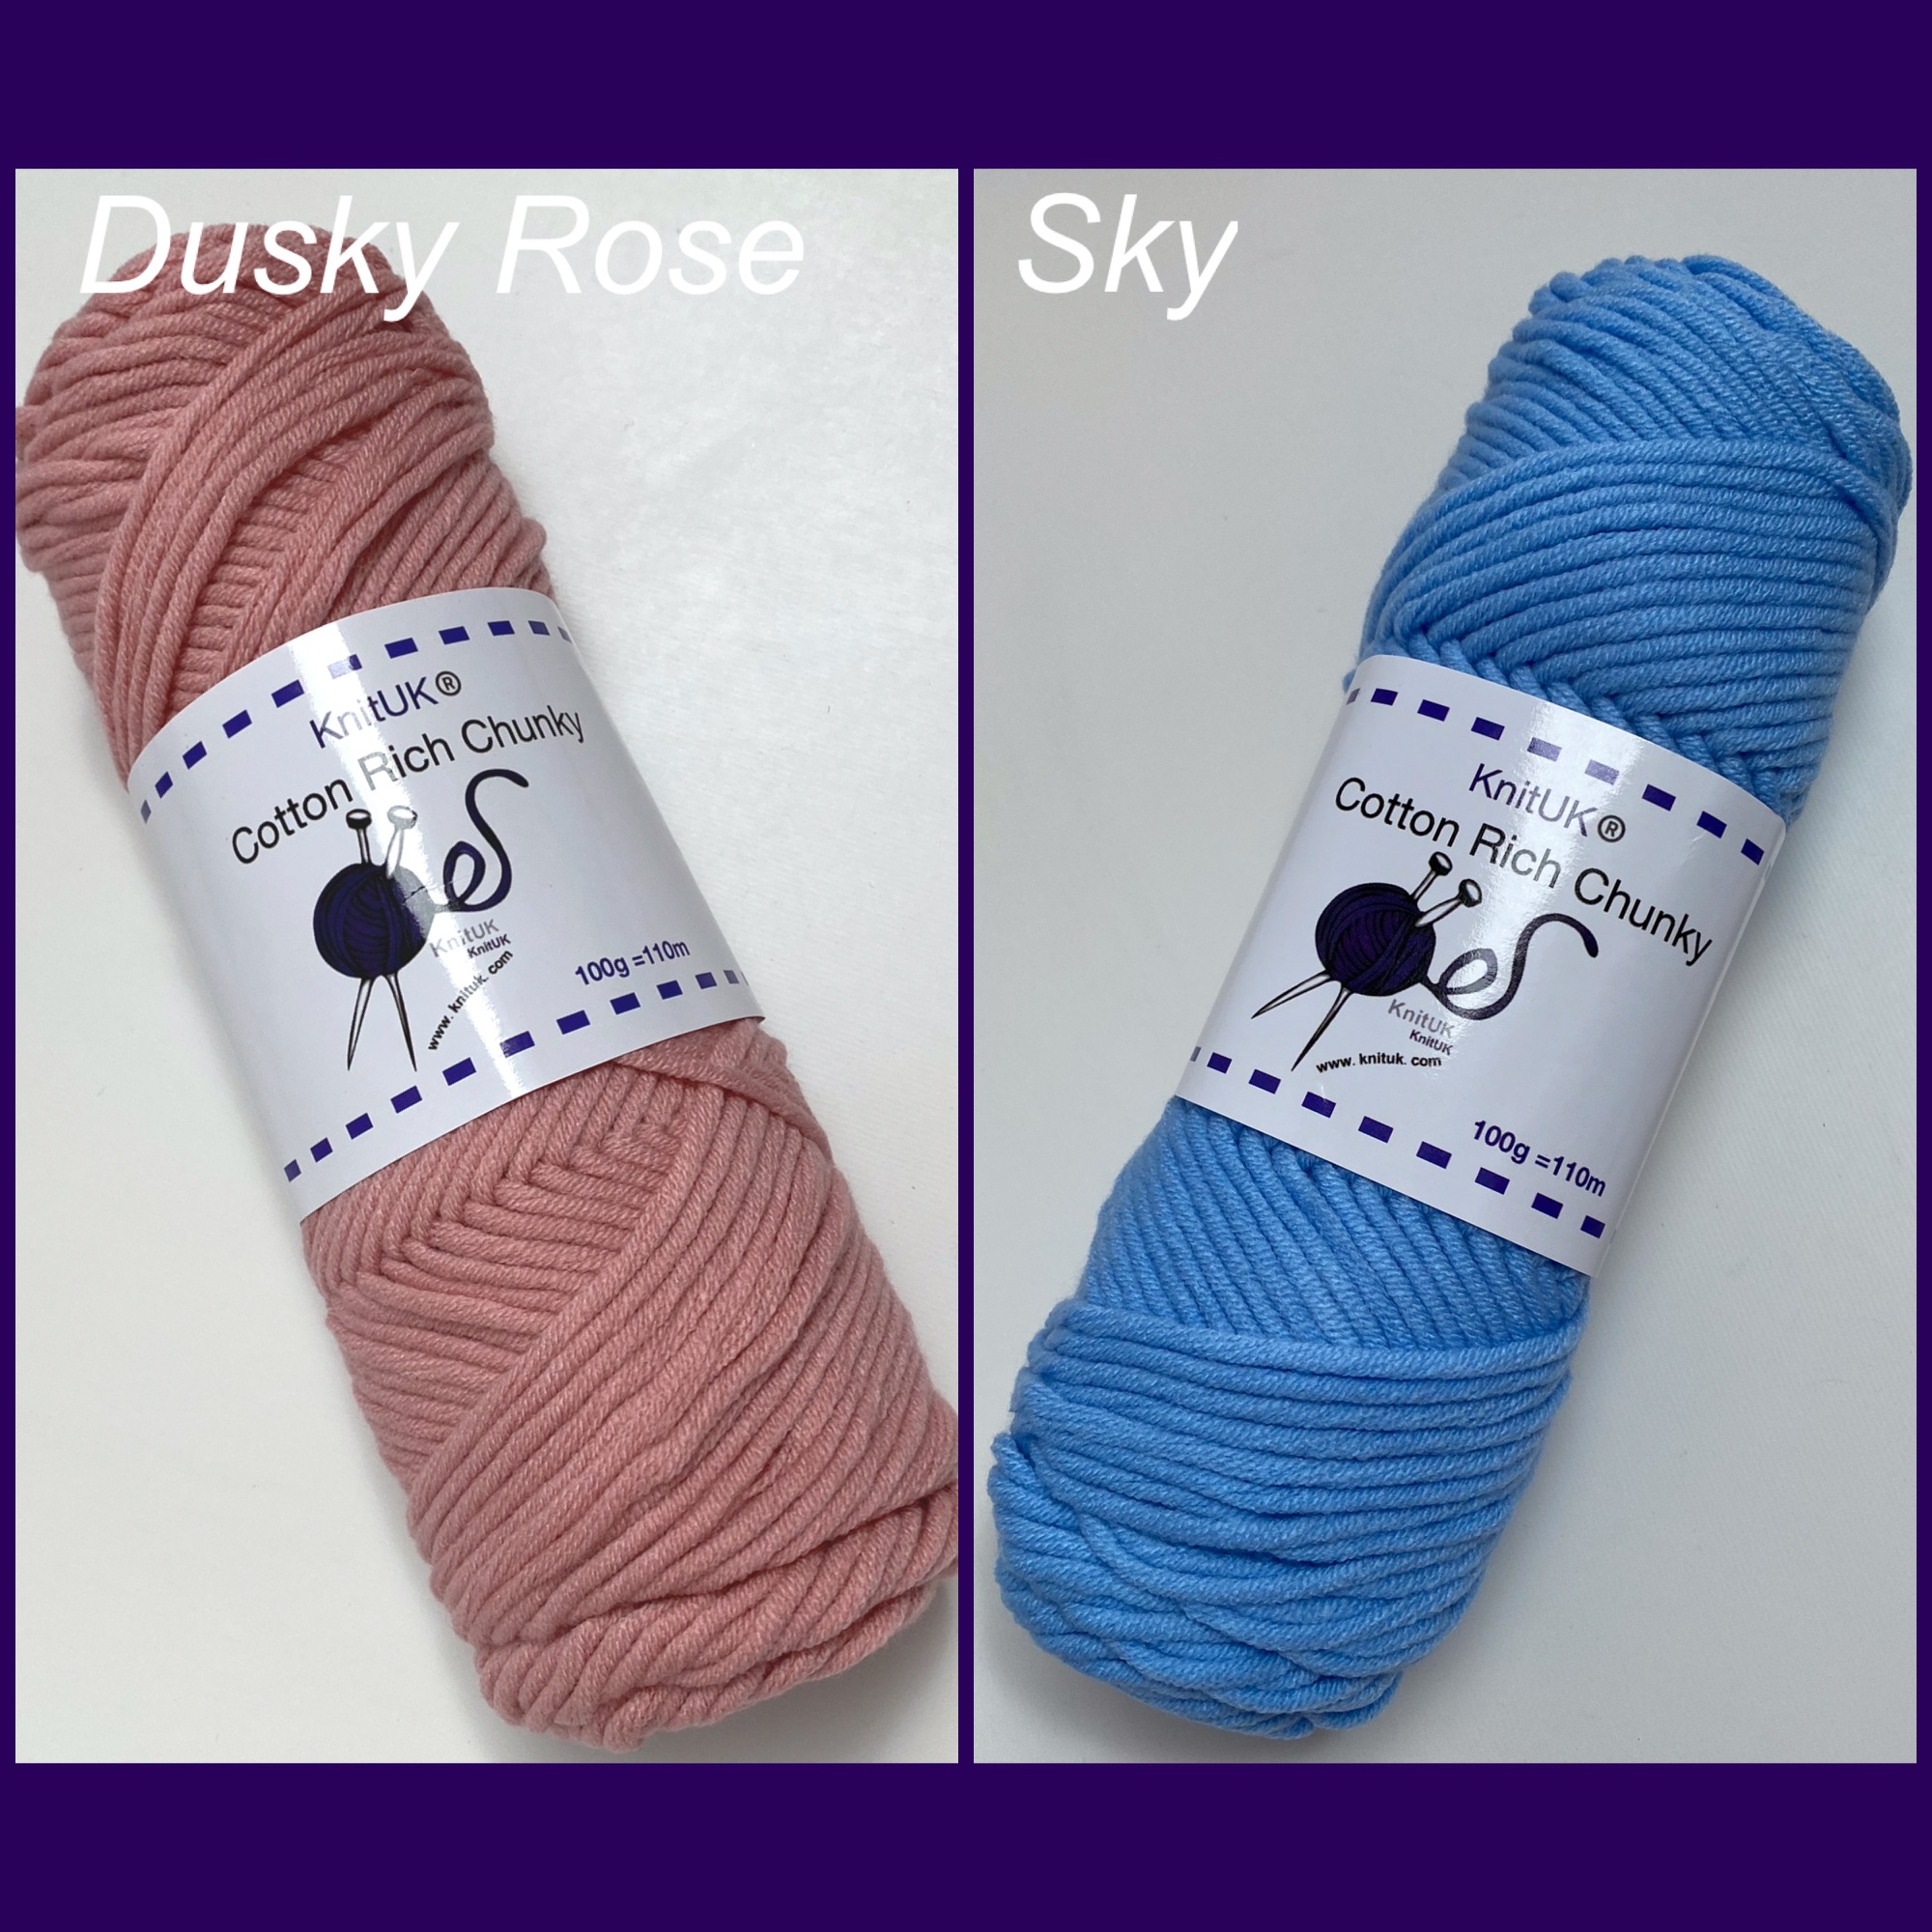 Knituk cotton rich chunky yarn dusky rose sky colours long balls knitting l